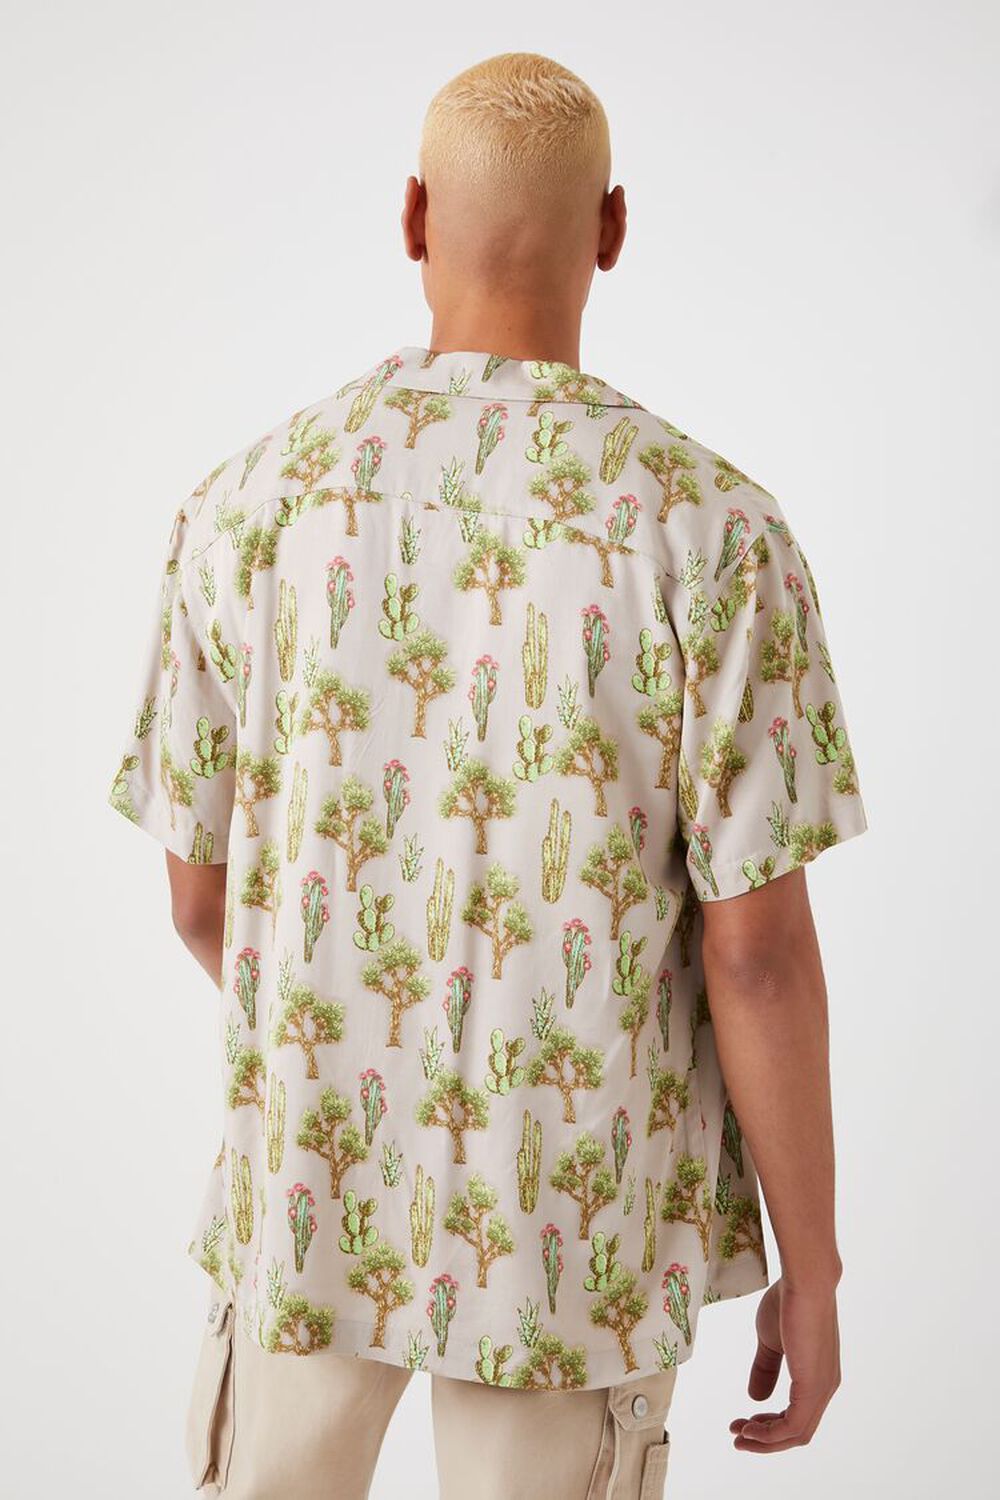 Cactus Print Shirt, image 3